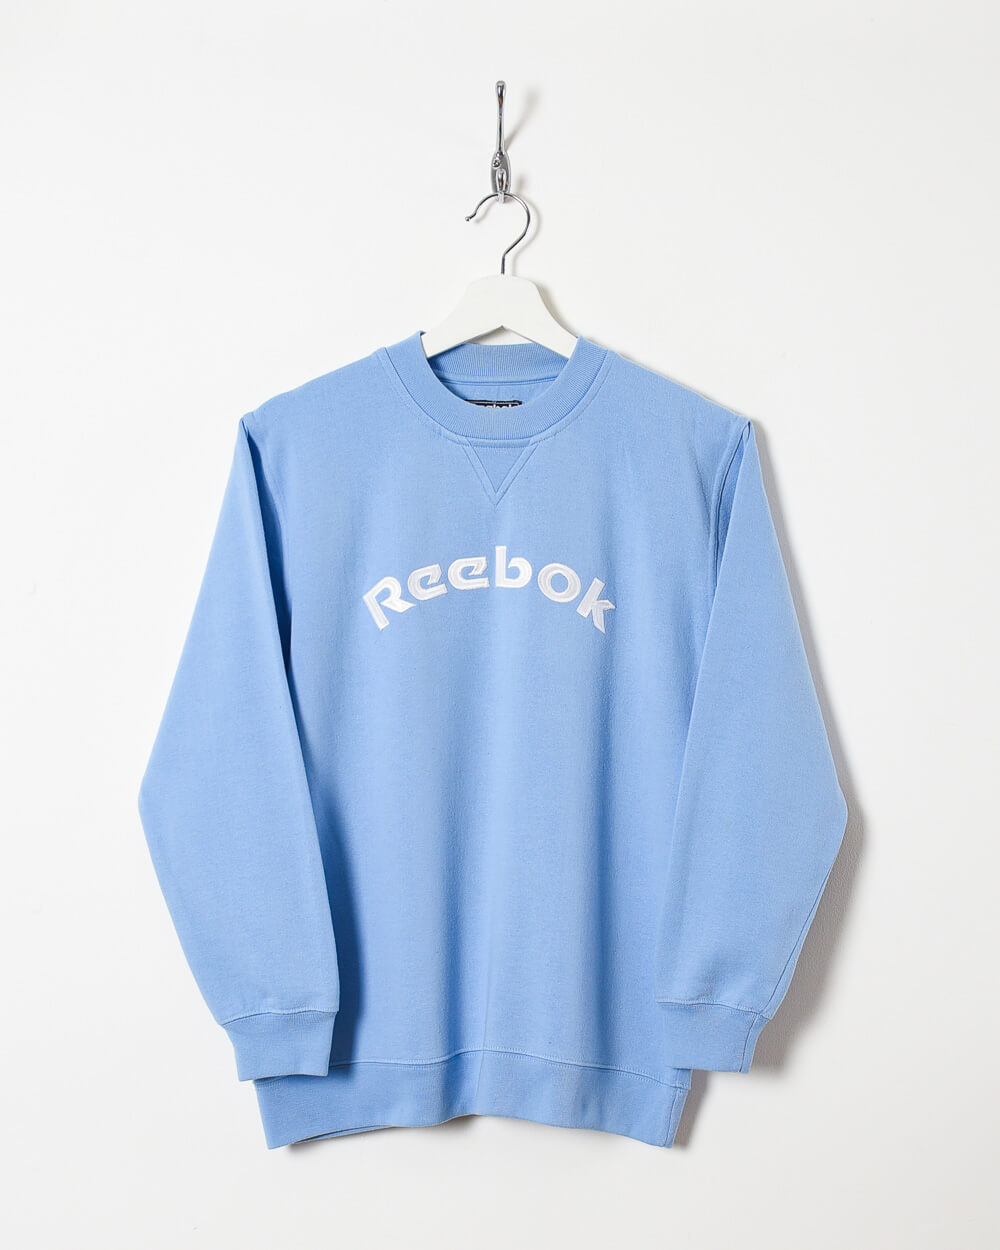 Blue Reebok Women's Sweatshirt - Large